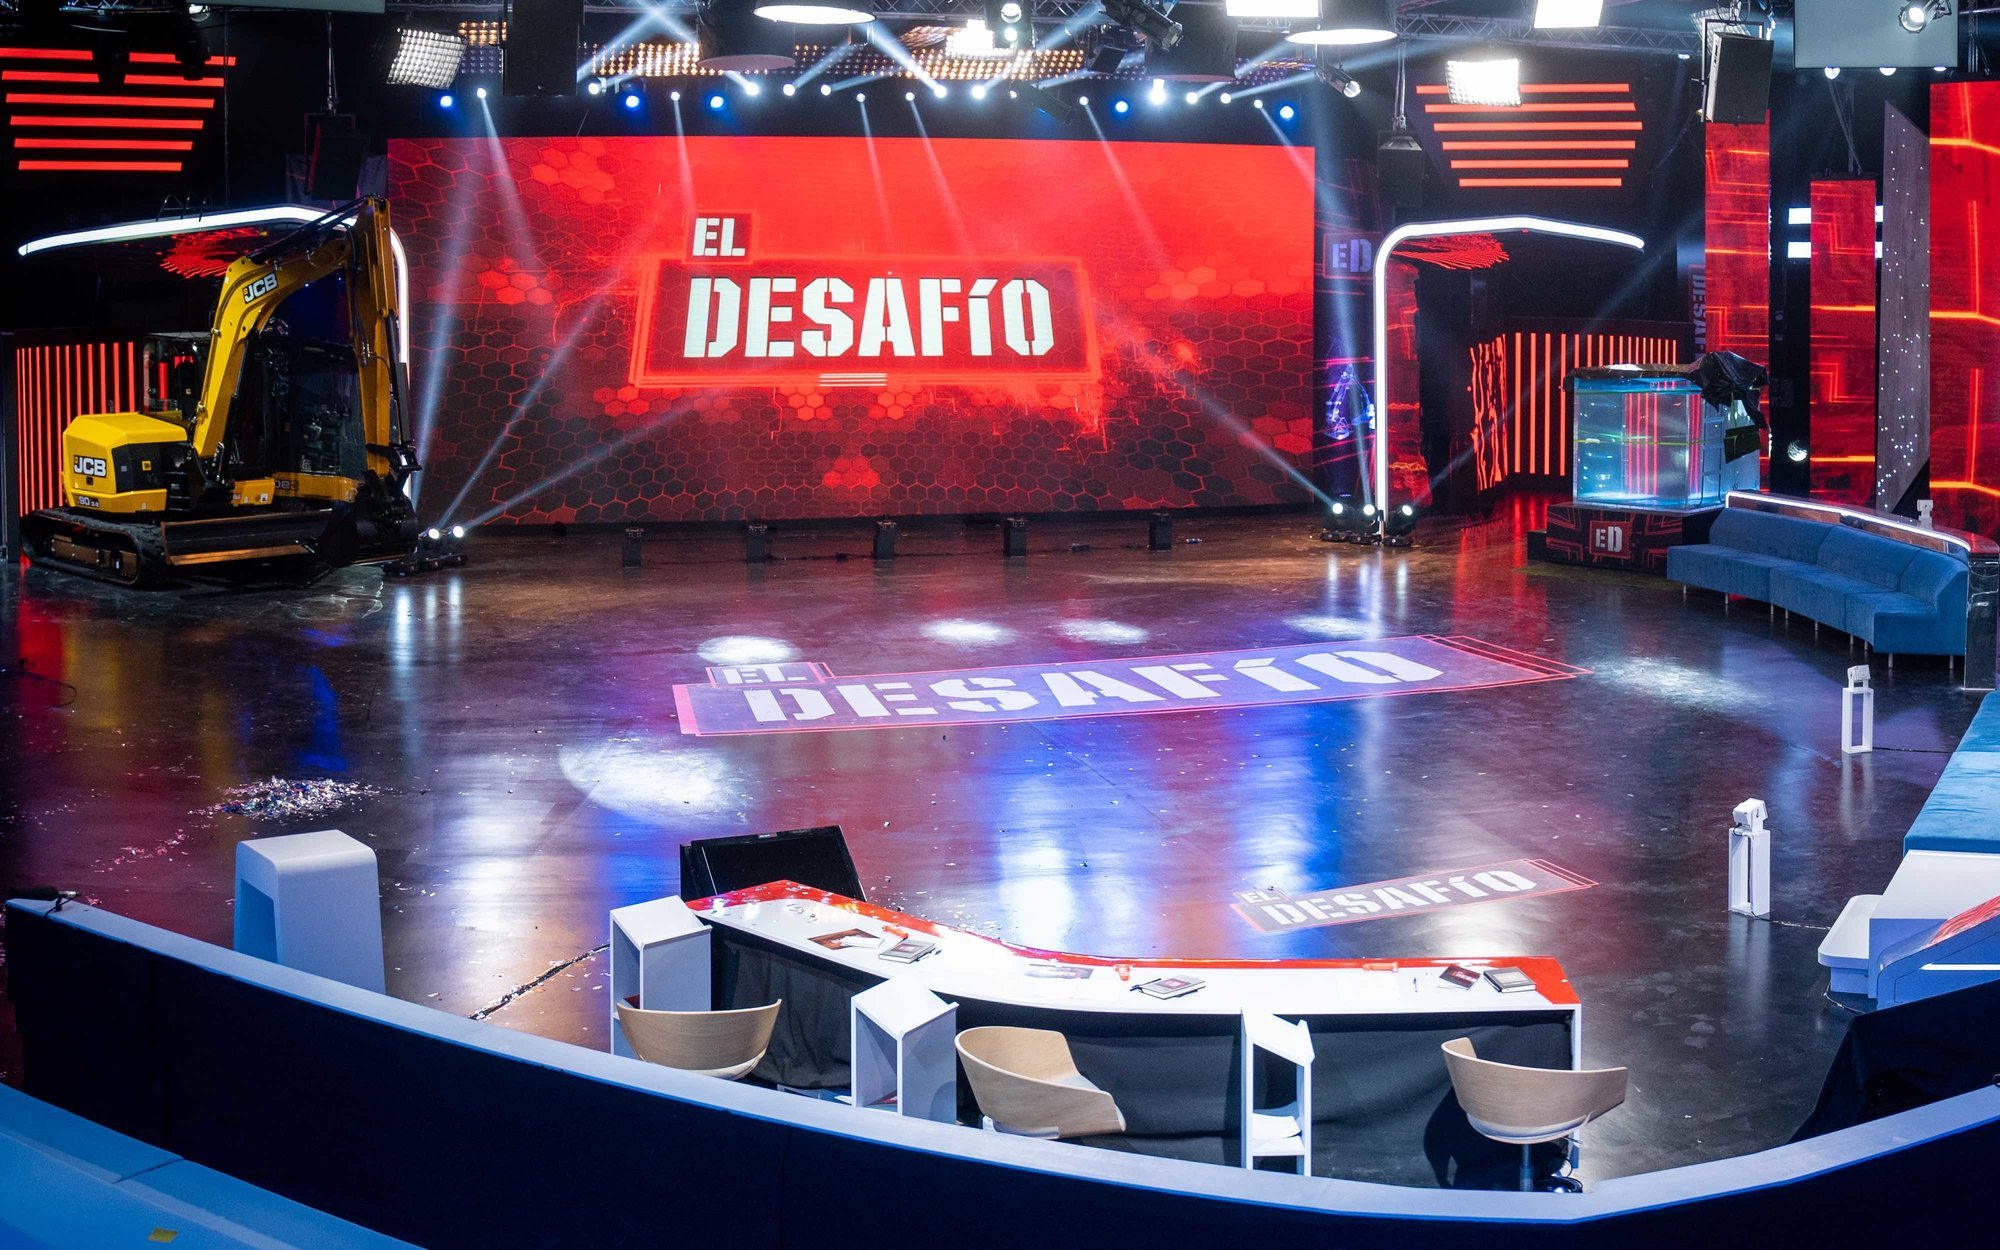 Santiago Segura y Juan del Val se suman a Tamara Falcó en el jurado de 'El desafío' de Antena 3